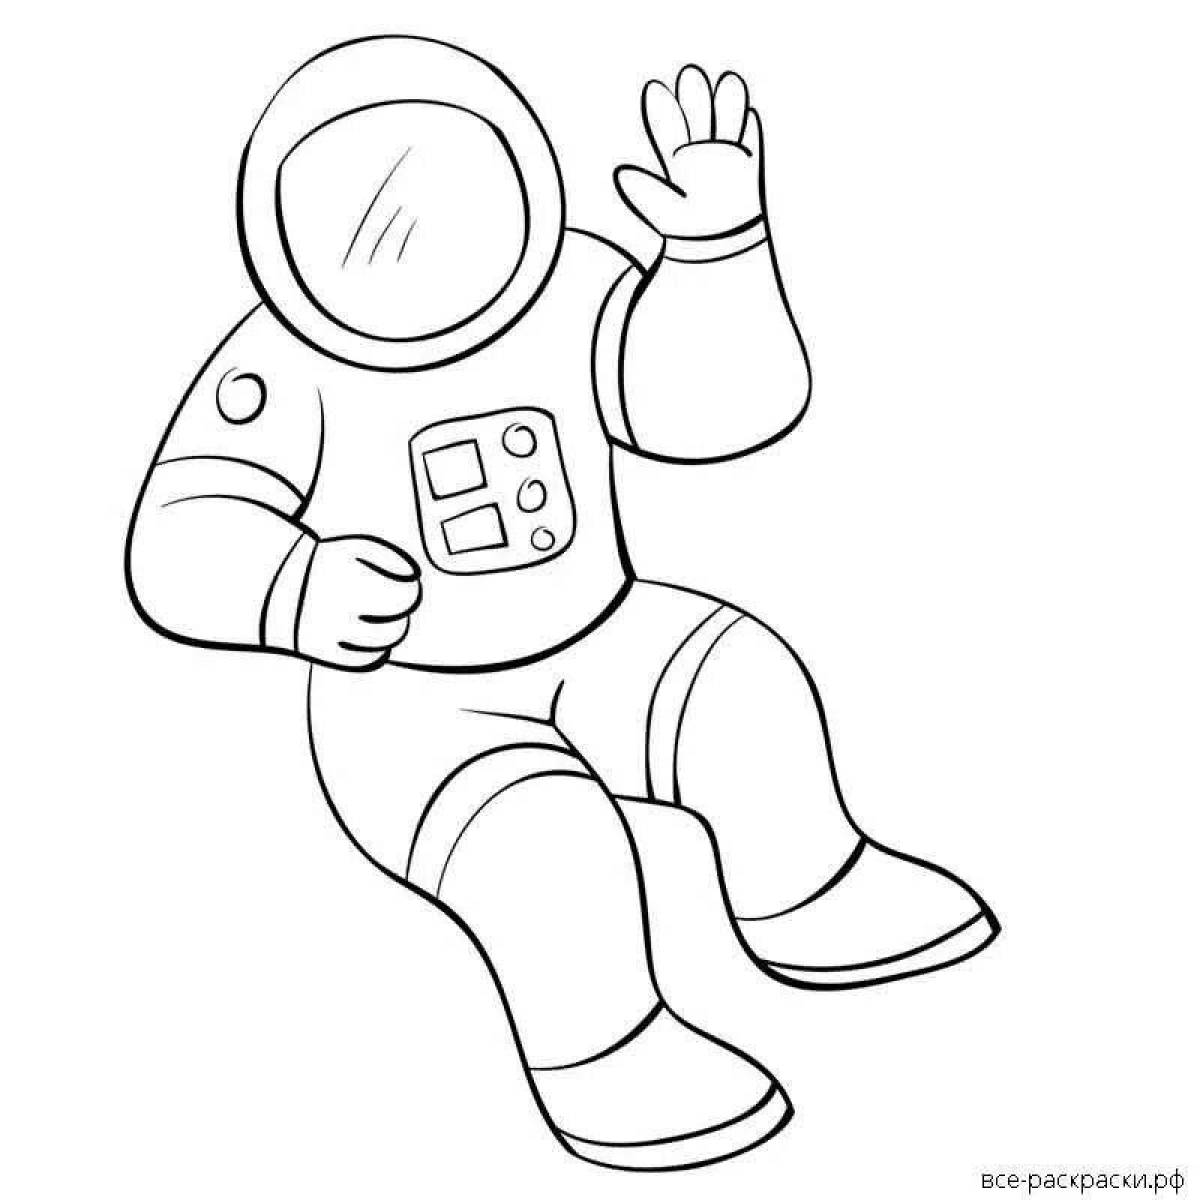 Нарисовать космонавта карандашом. Космонавт раскраска для детей. Космонавт раскраска для малышей. Космонавт для раскрашивания для детей. Раскраска Космонавта в скафандре для детей.